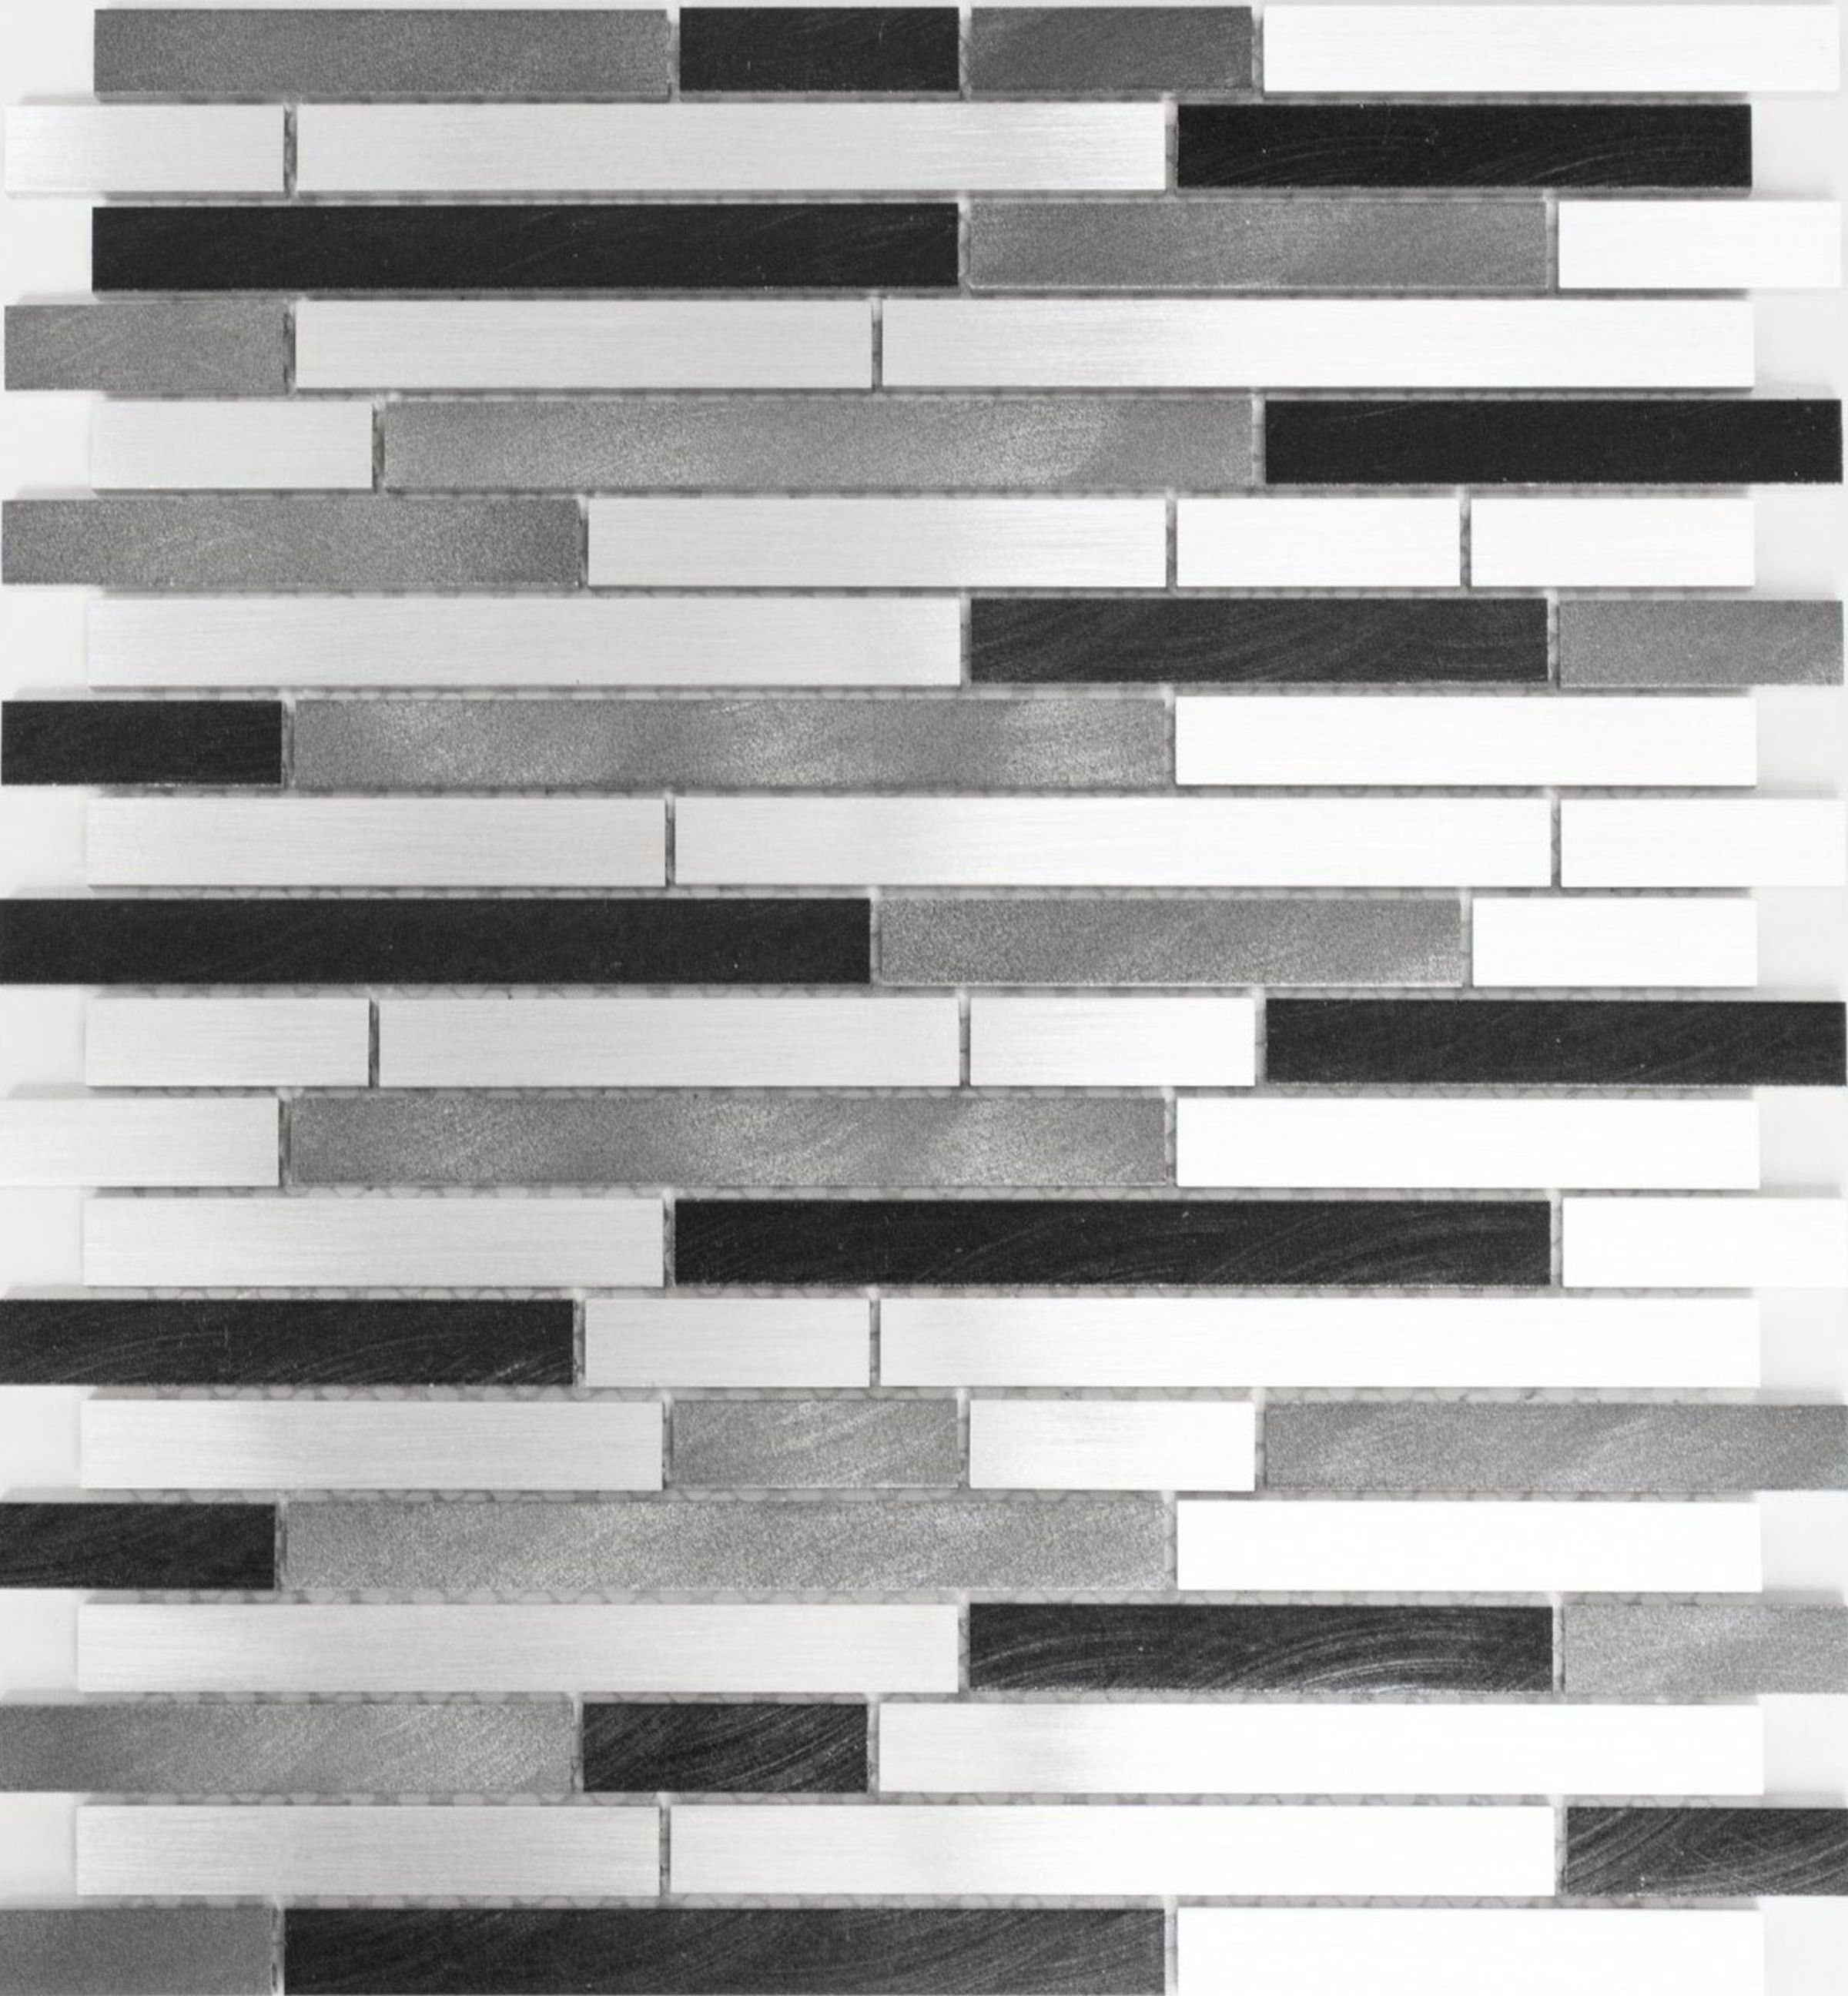 Mosani Mosaikfliesen Mosaik Fliese Aluminium Verbund grau schwarz Küchenwand